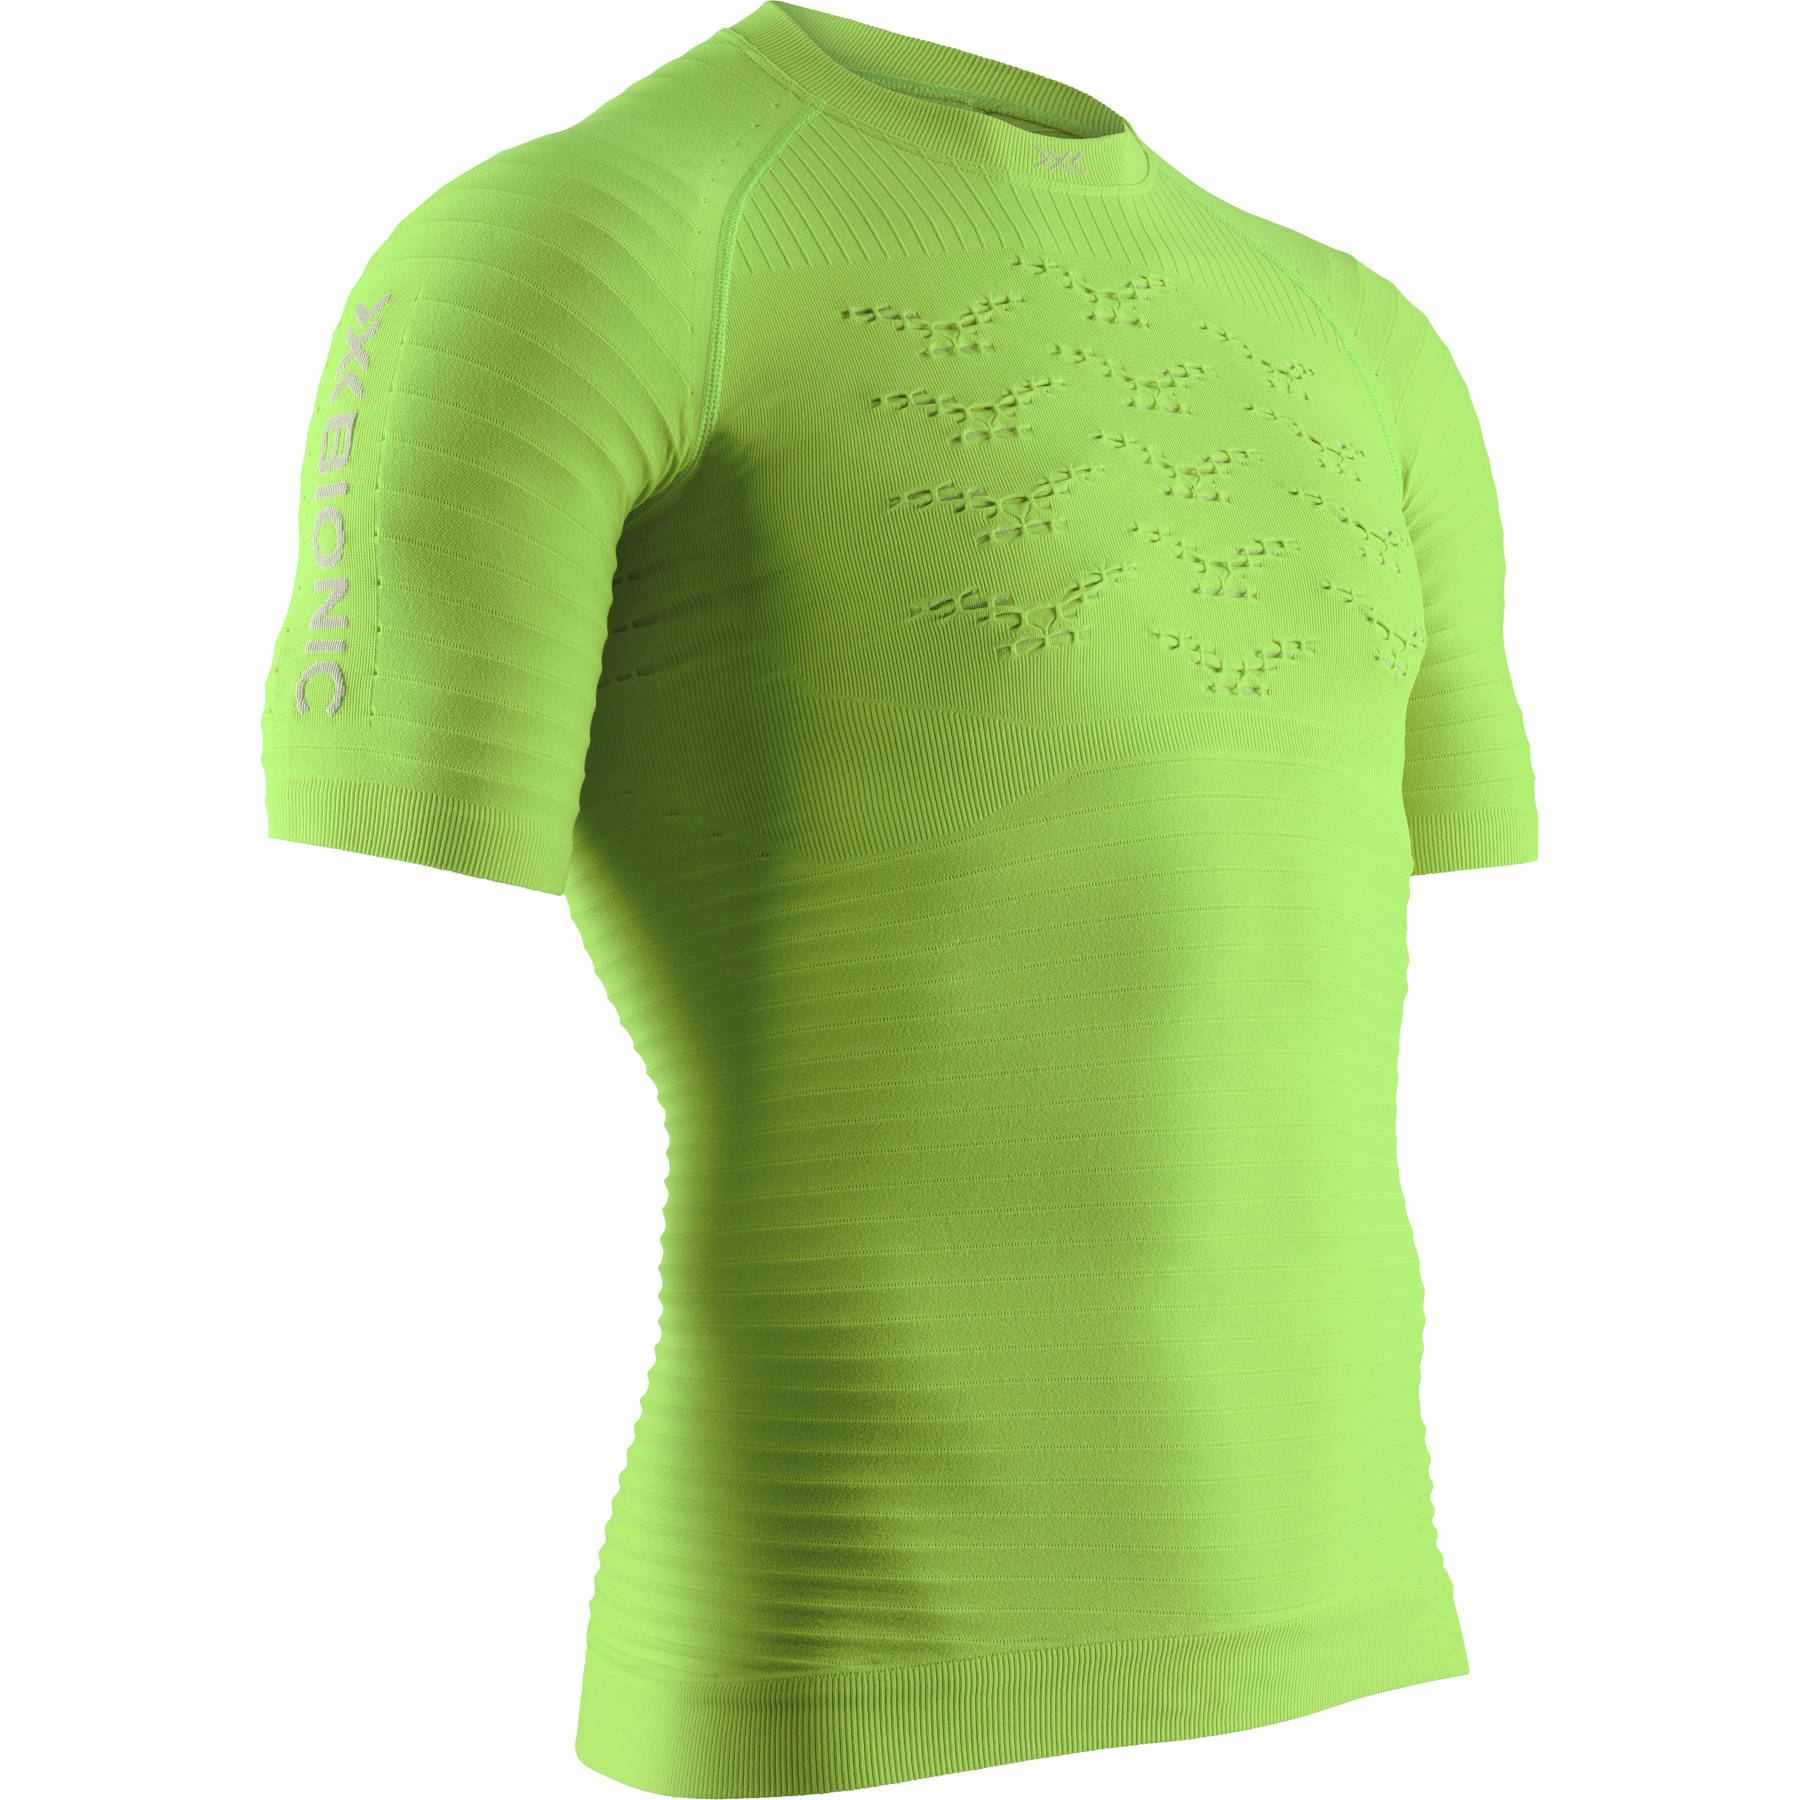 Produktbild von X-Bionic Effektor 4.0 Run Kurzarm-Laufshirt für Herren - effektor green/arctic white